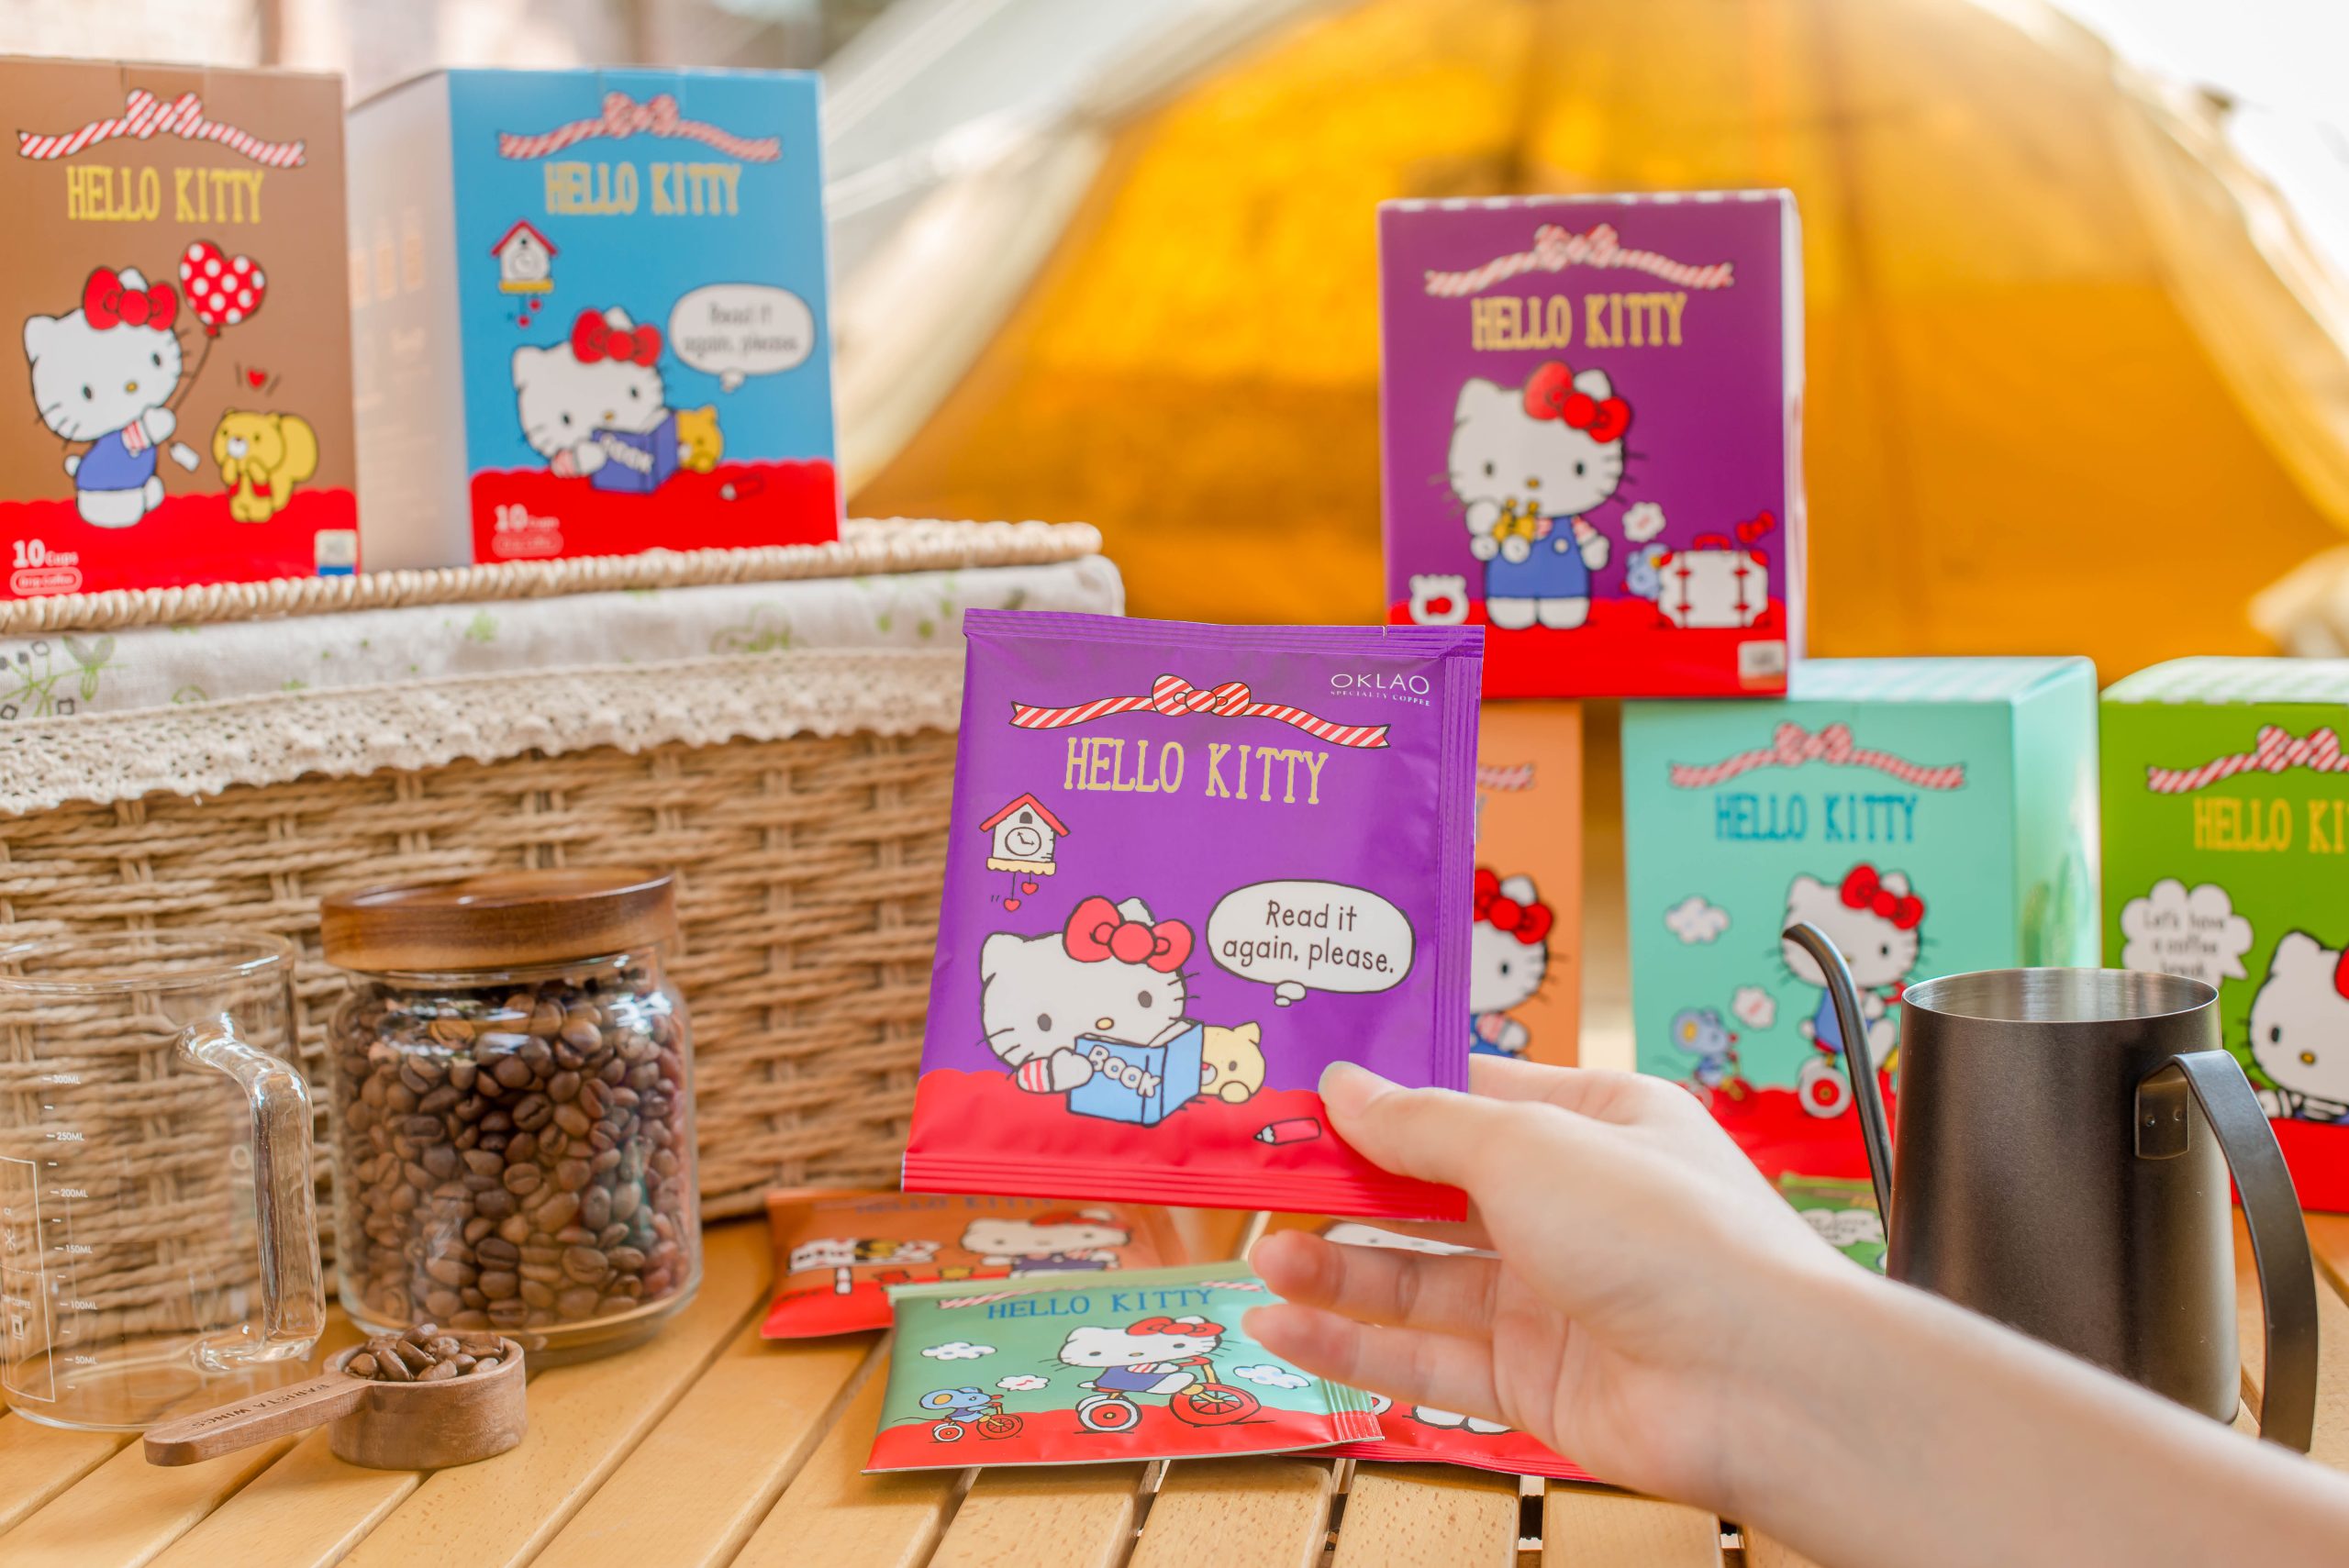 歐客佬 Hello Kitty 聯名精品 濾泡式 掛耳咖啡 禮盒 限量版 Oklao Hello Kitty co-branded boutique filter-type ear-hanging coffee gift box limited edition